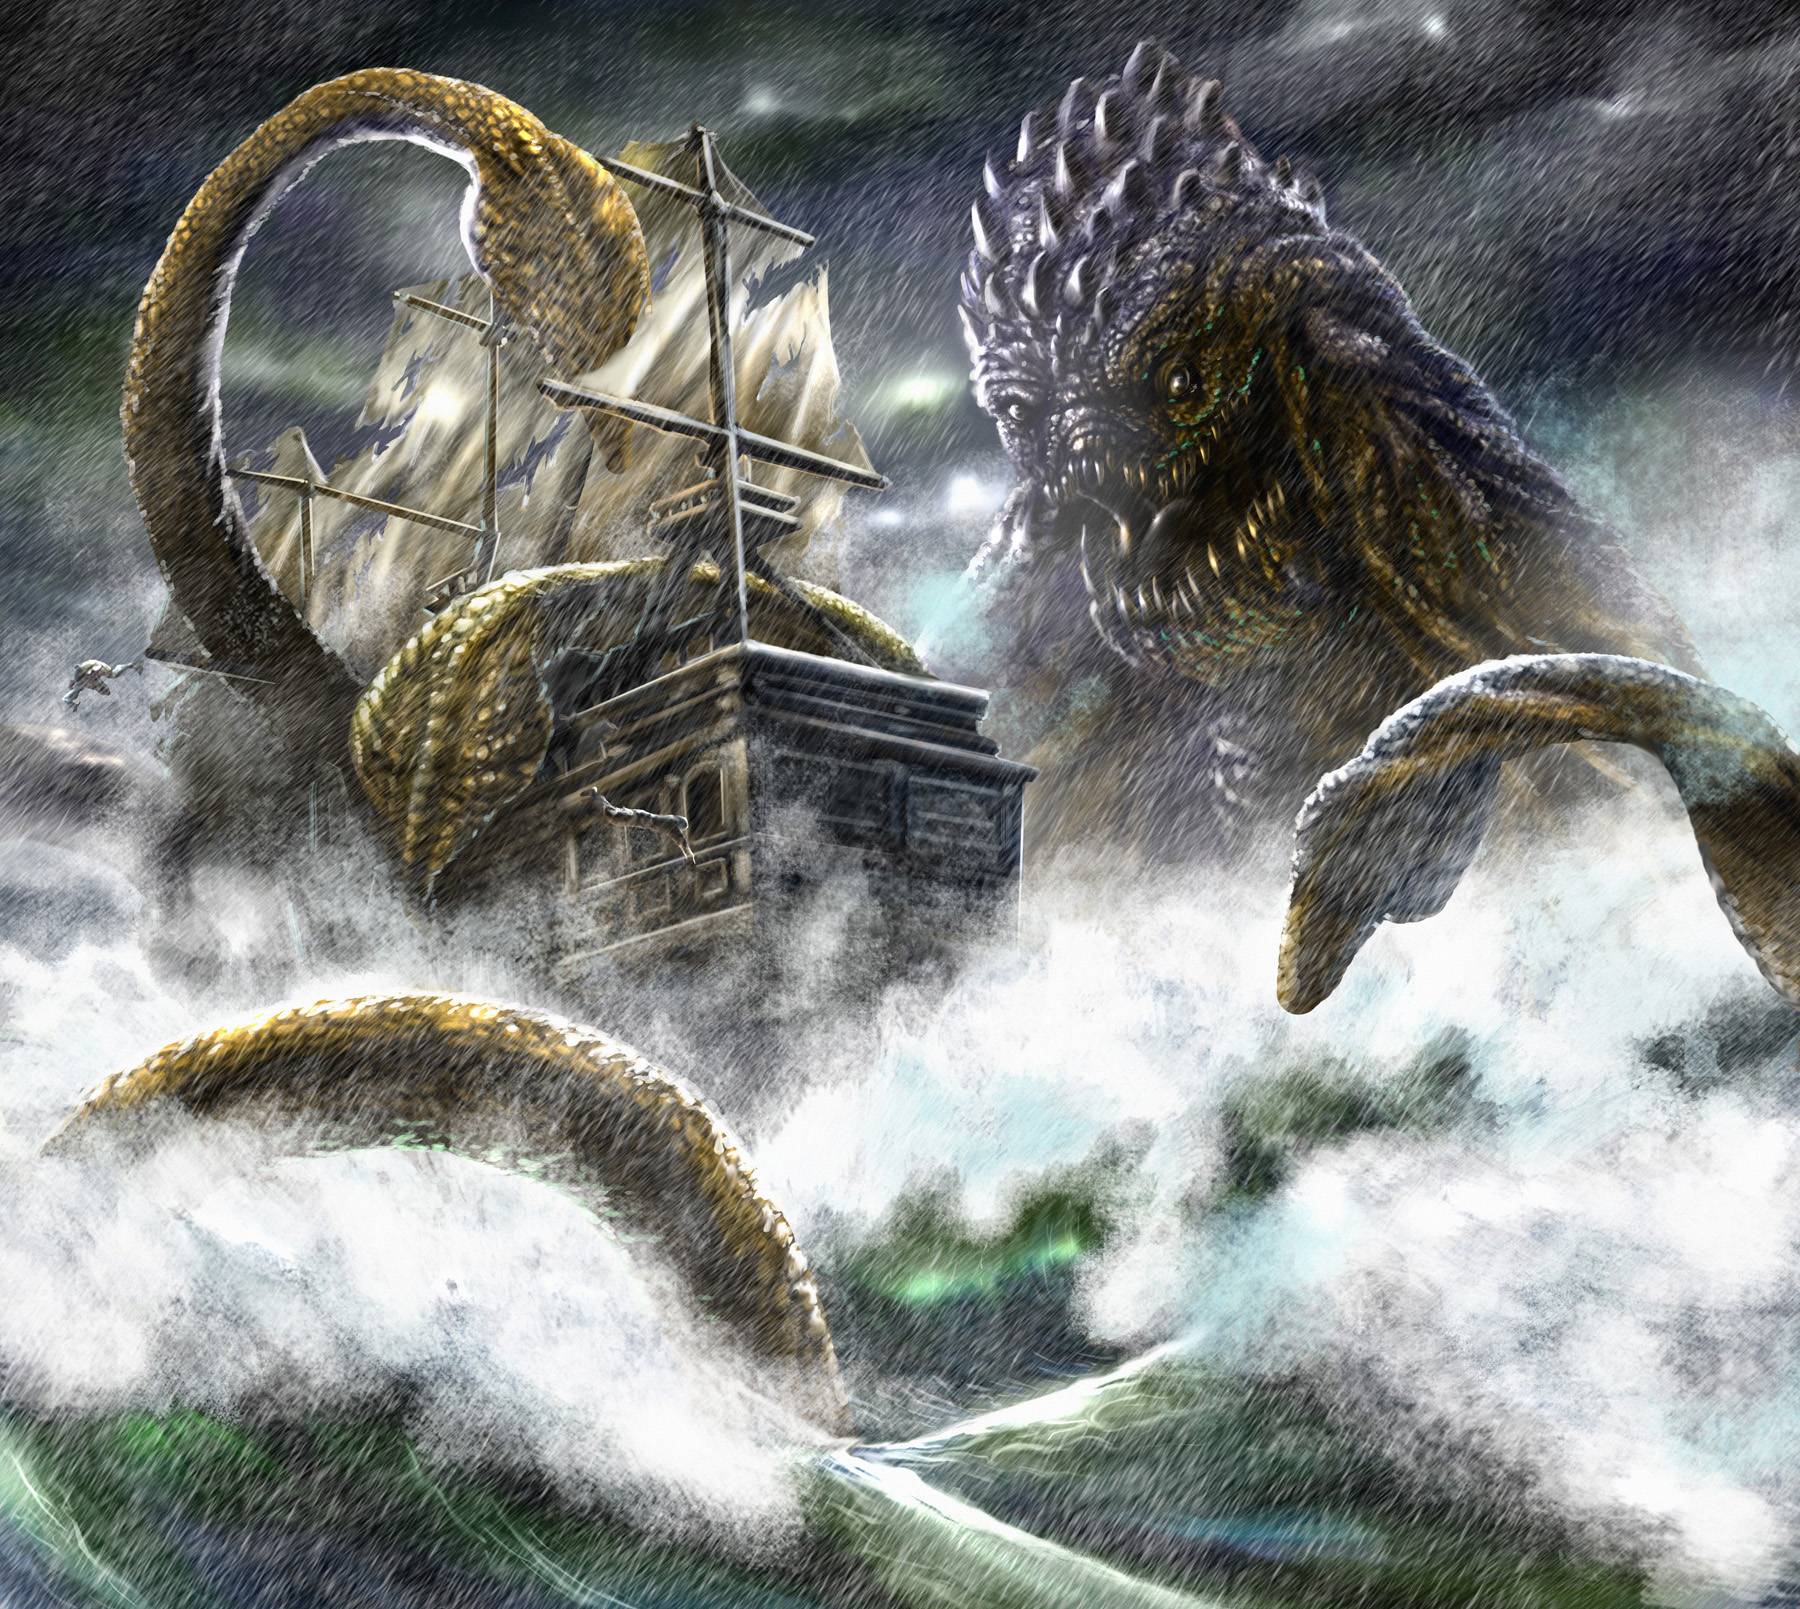 image For > Kraken Monster Clash Of The Titans